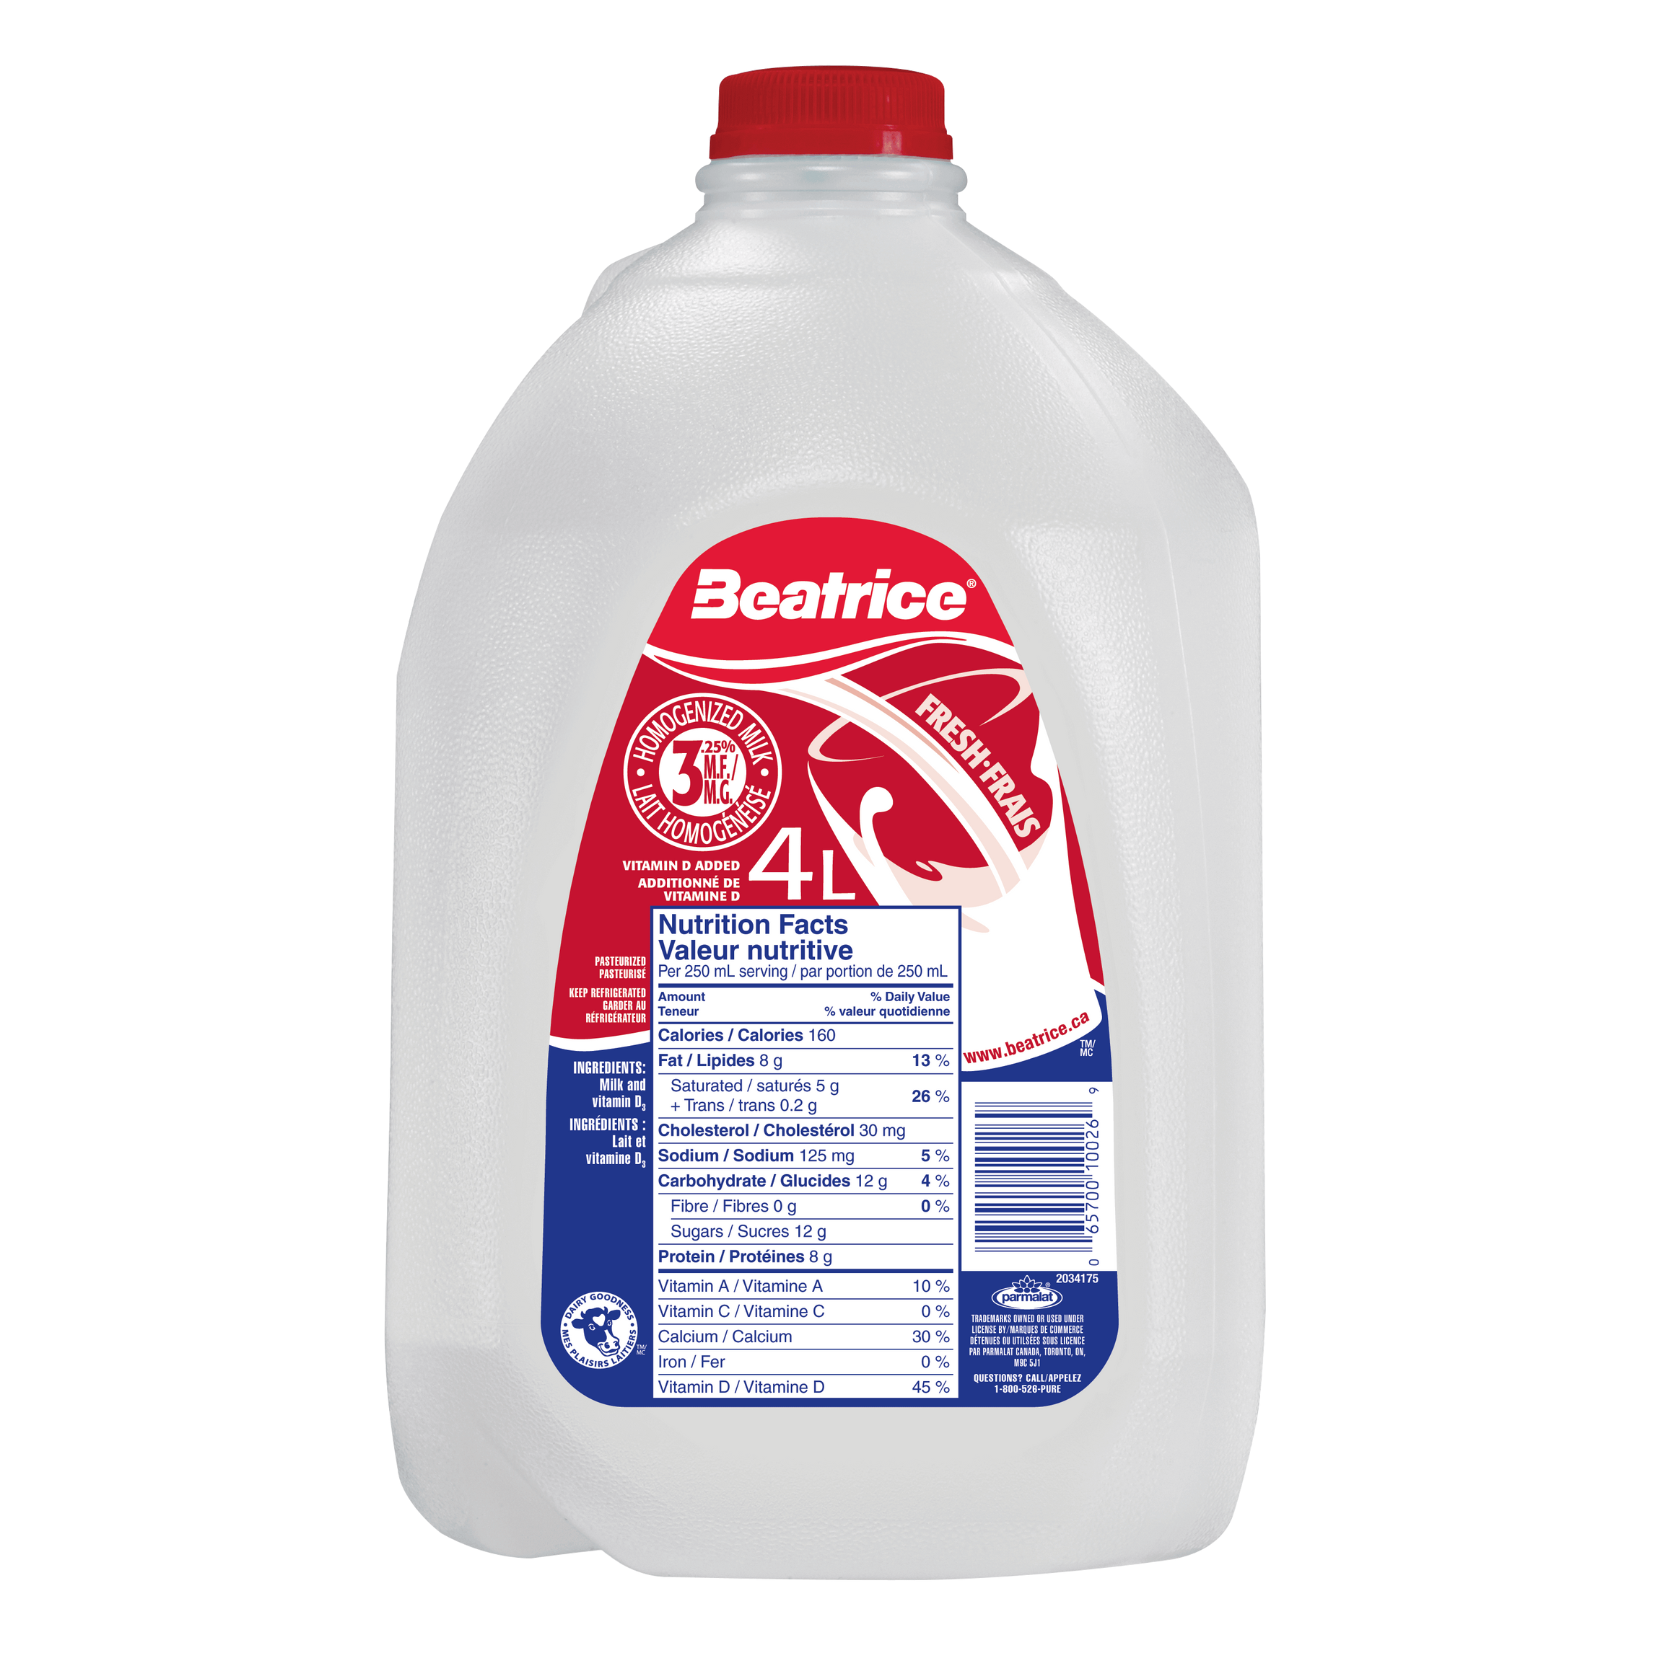 Beatrice 3.25% Milk 4L